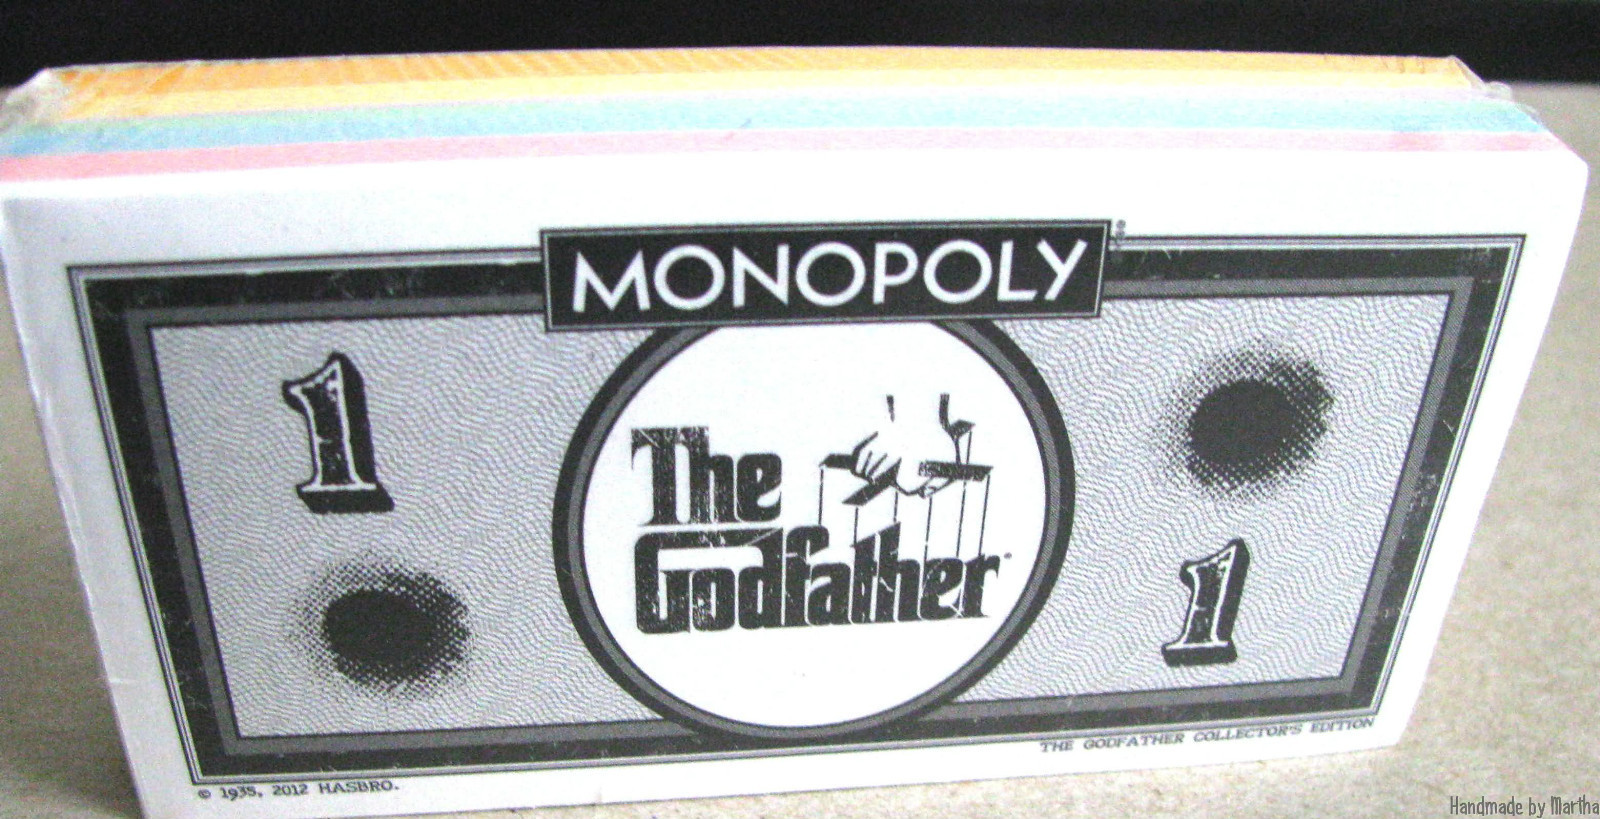 Billets du Monopoly The Godfather